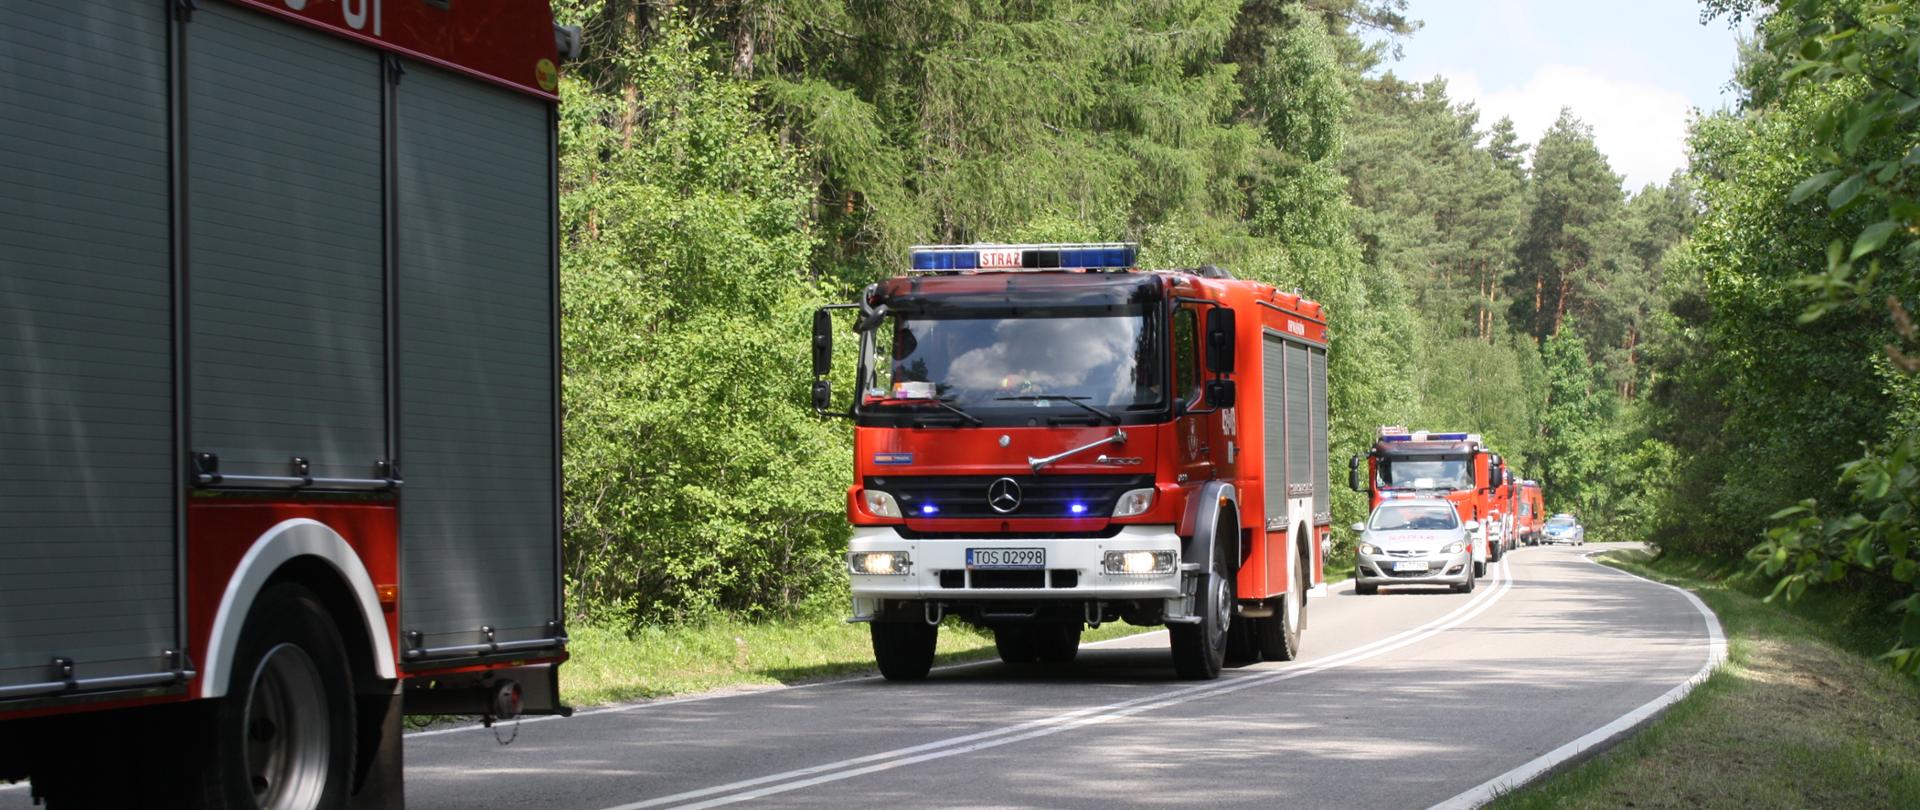 Kolumna pojazdów pożarniczych jadących ulicą na ćwiczenia